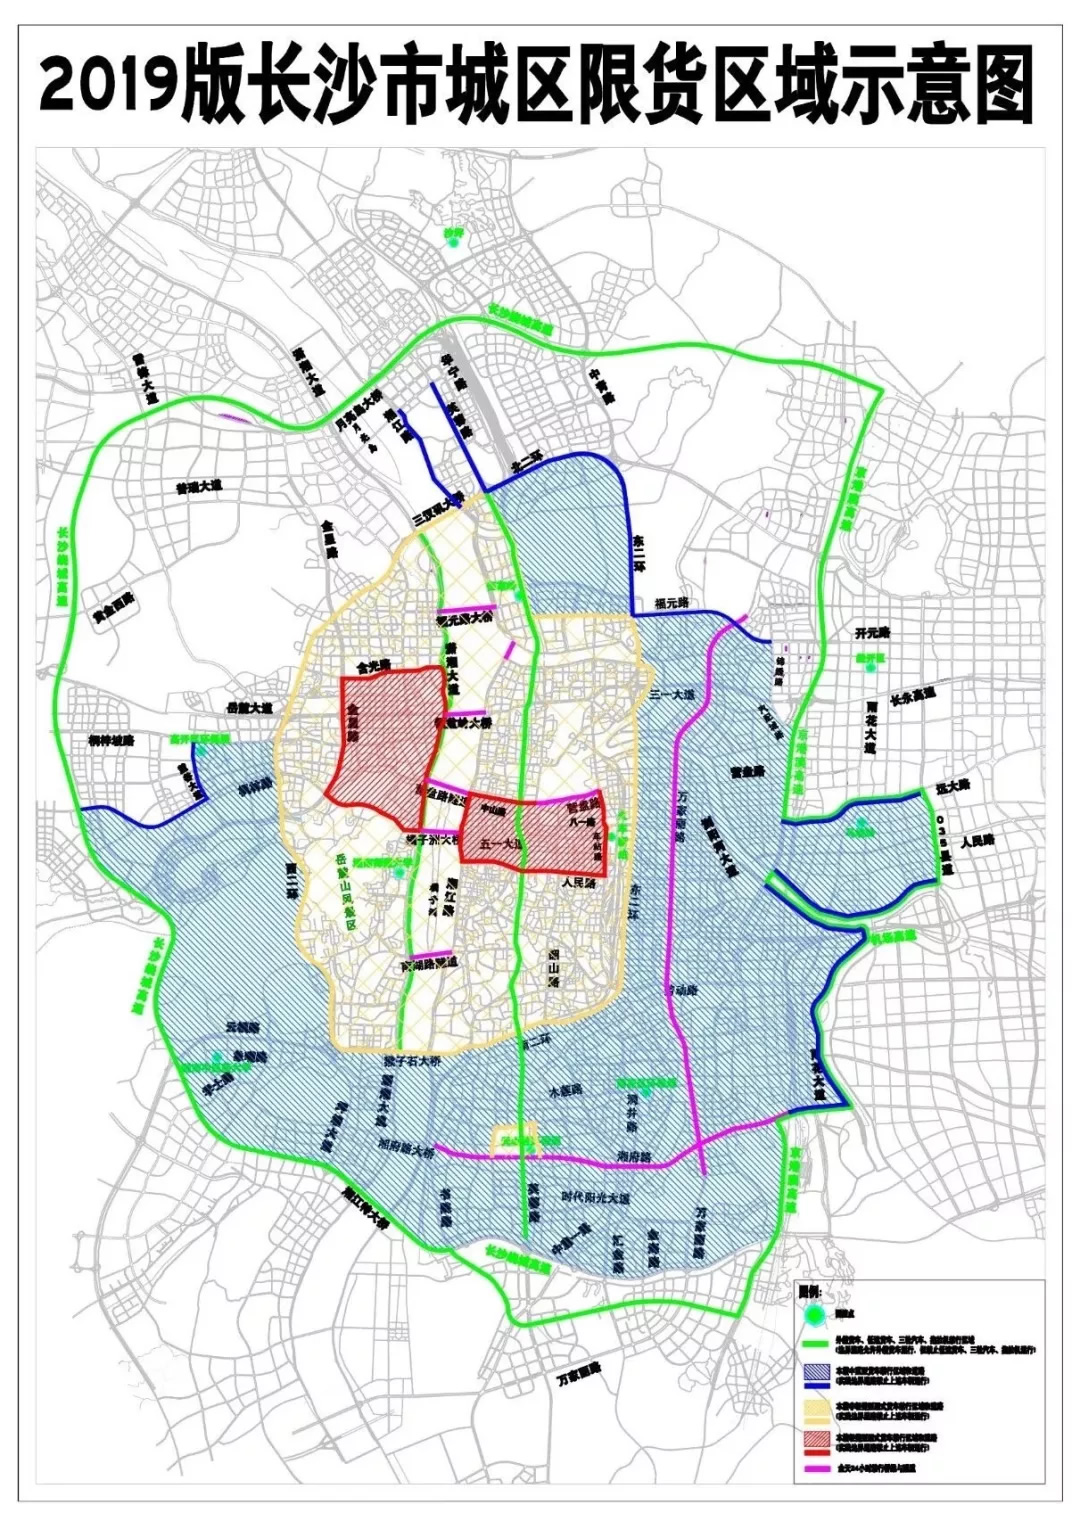 2019版长沙市城区限货区域示意图